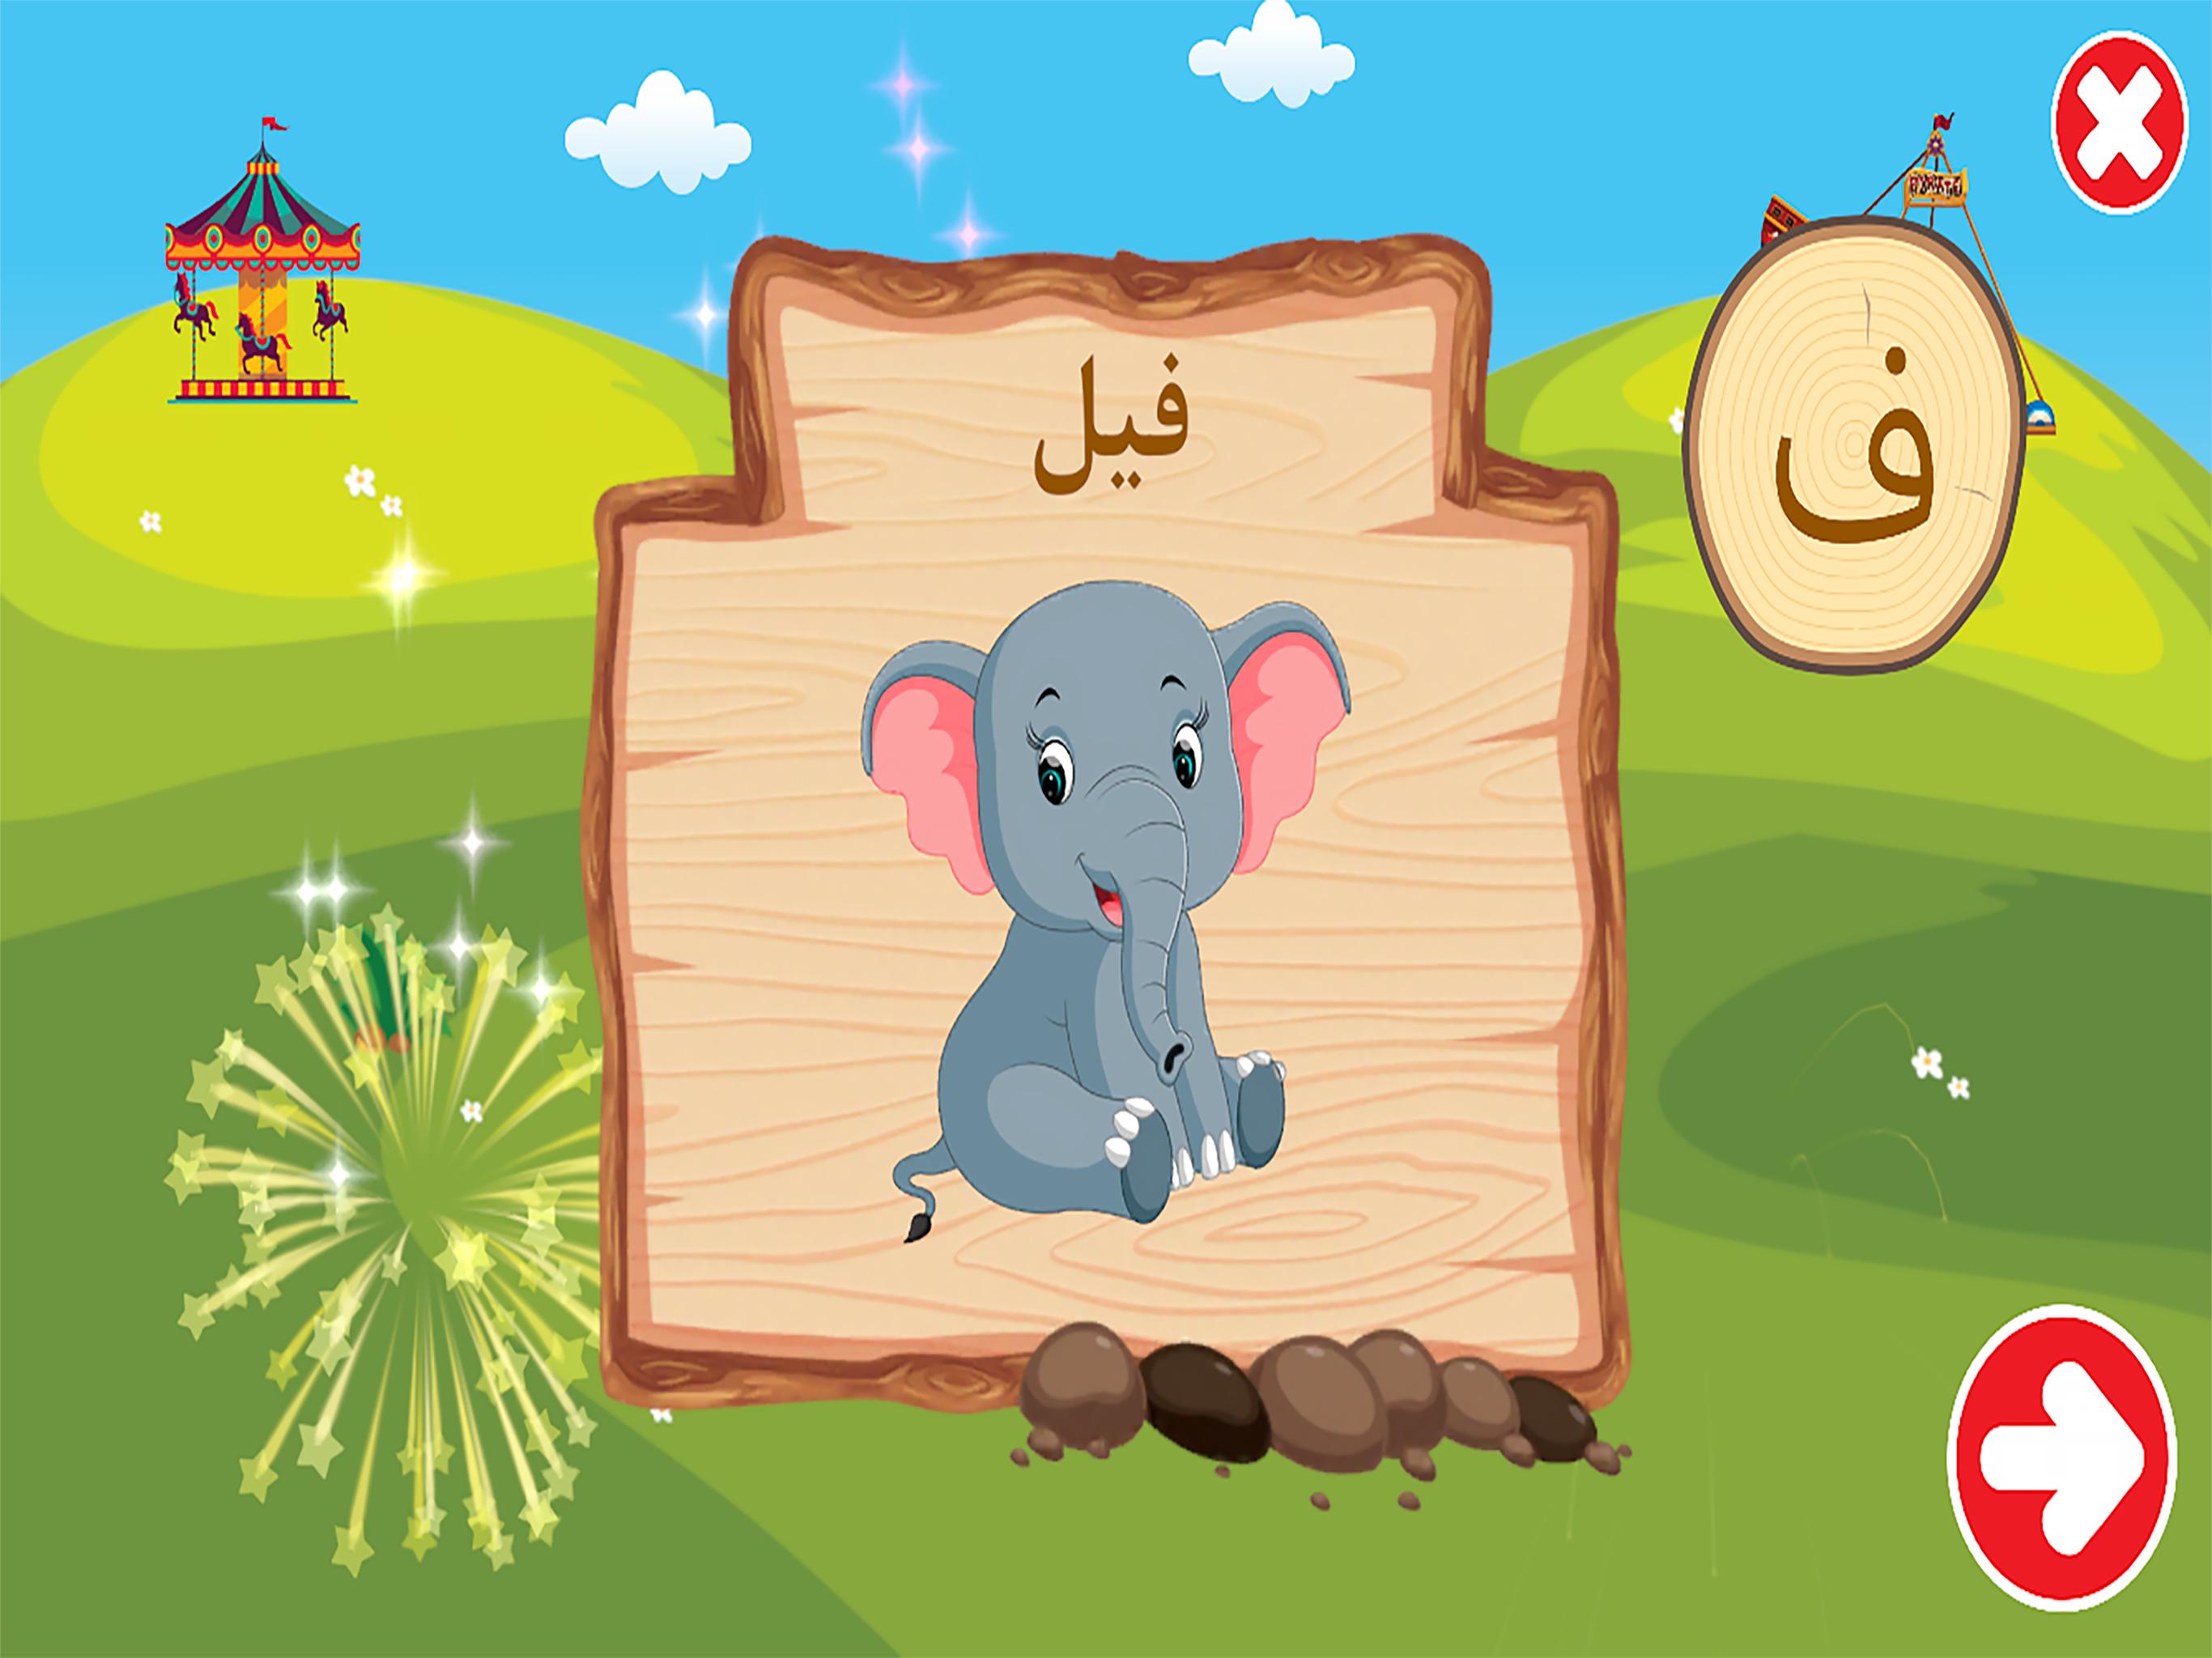 الفبای فارسی کودکان (Farsi alphabet game) 1.11.2 Screenshot 24